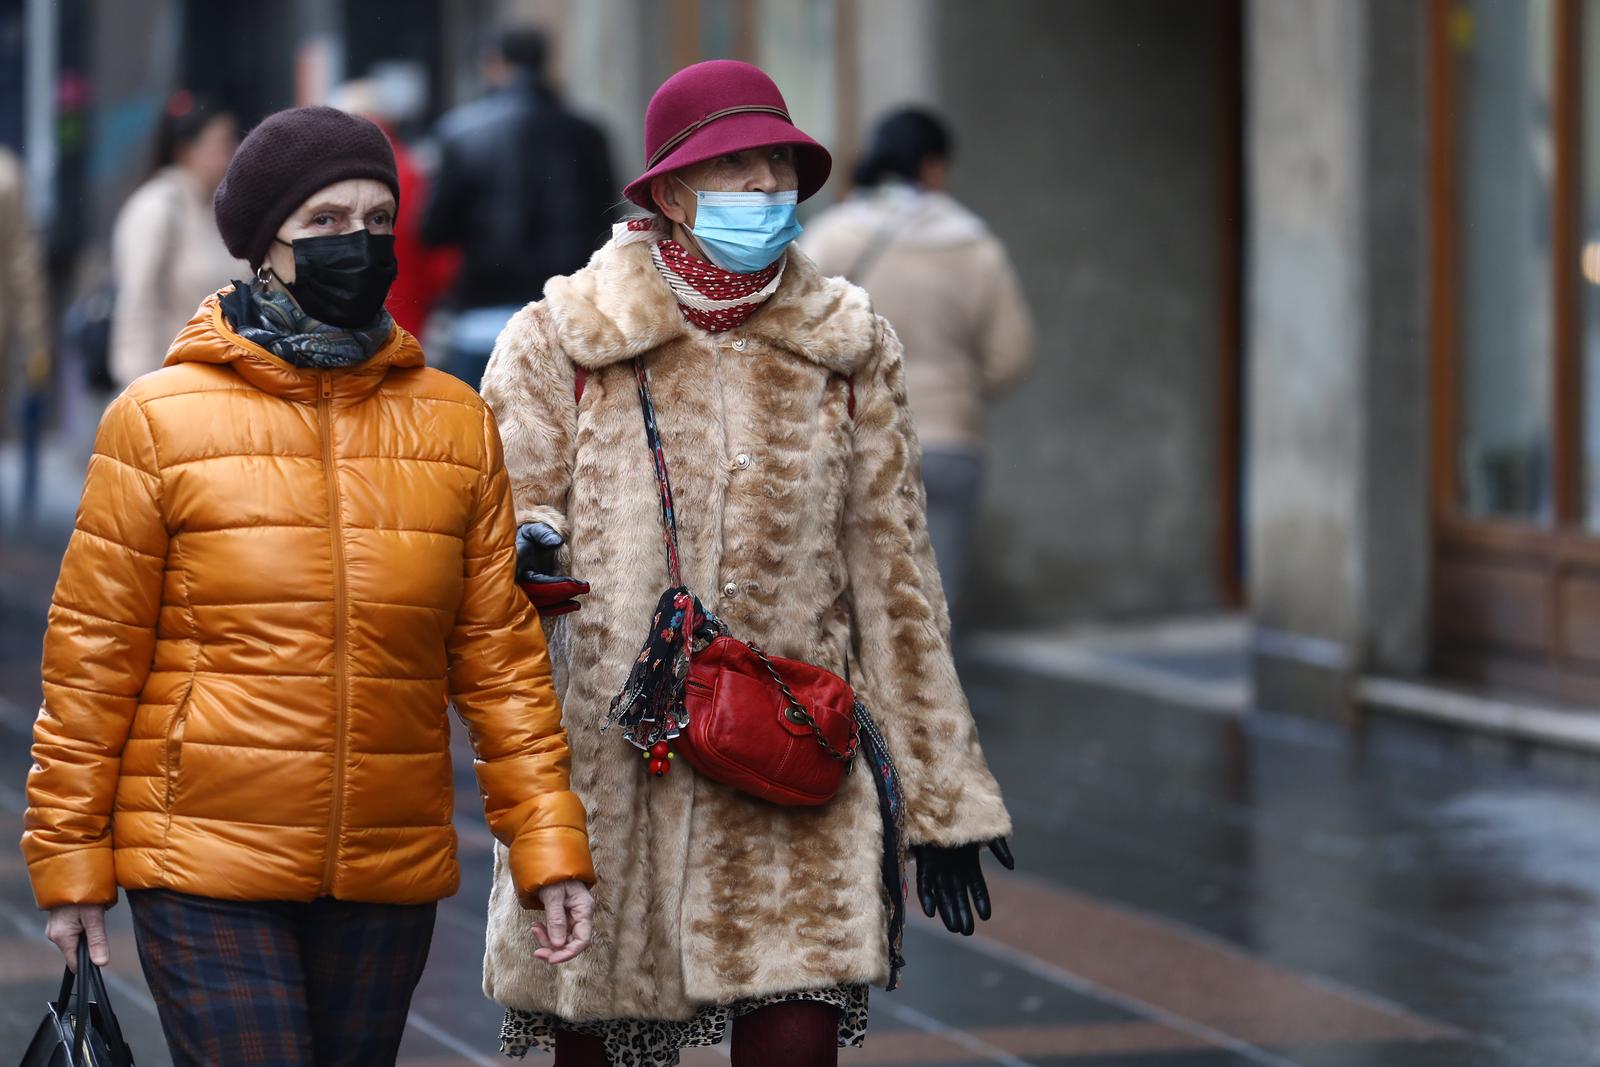 02.12.2021., Sarajevo, Bosna i Hercegovina - Unatoc pojavljivanju novih sojeva virusa i pogorsanju epidemioloske slike, veliki broj gradjana ne nosi maske na ulicama.